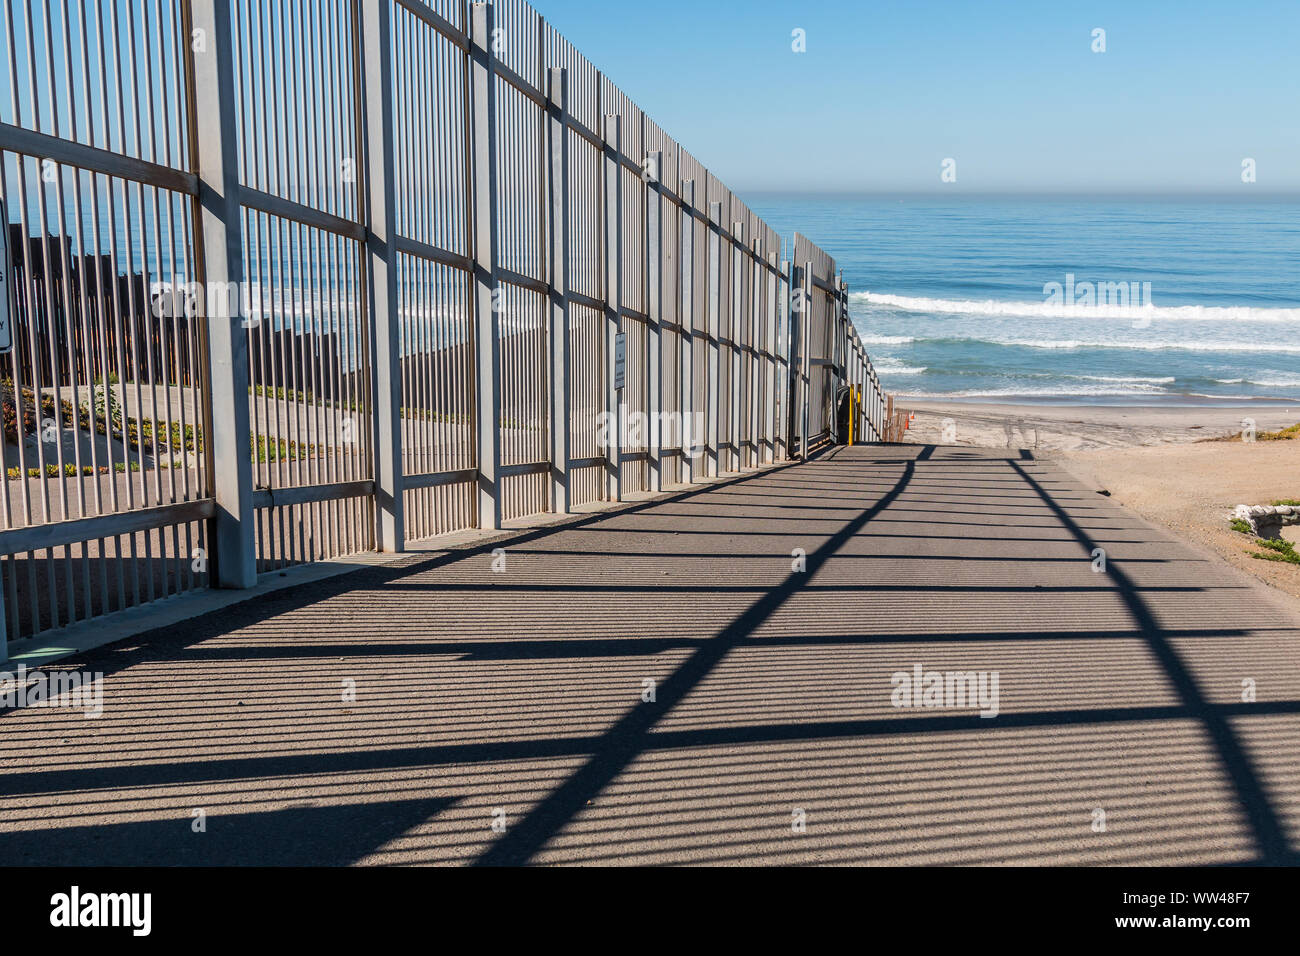 Innere Zaun der internationalen Grenze Mauer, die sich in den Pazifischen Ozean erstreckt und die Trennung in San Diego, Kalifornien von Tijuana, Mexiko. Stockfoto